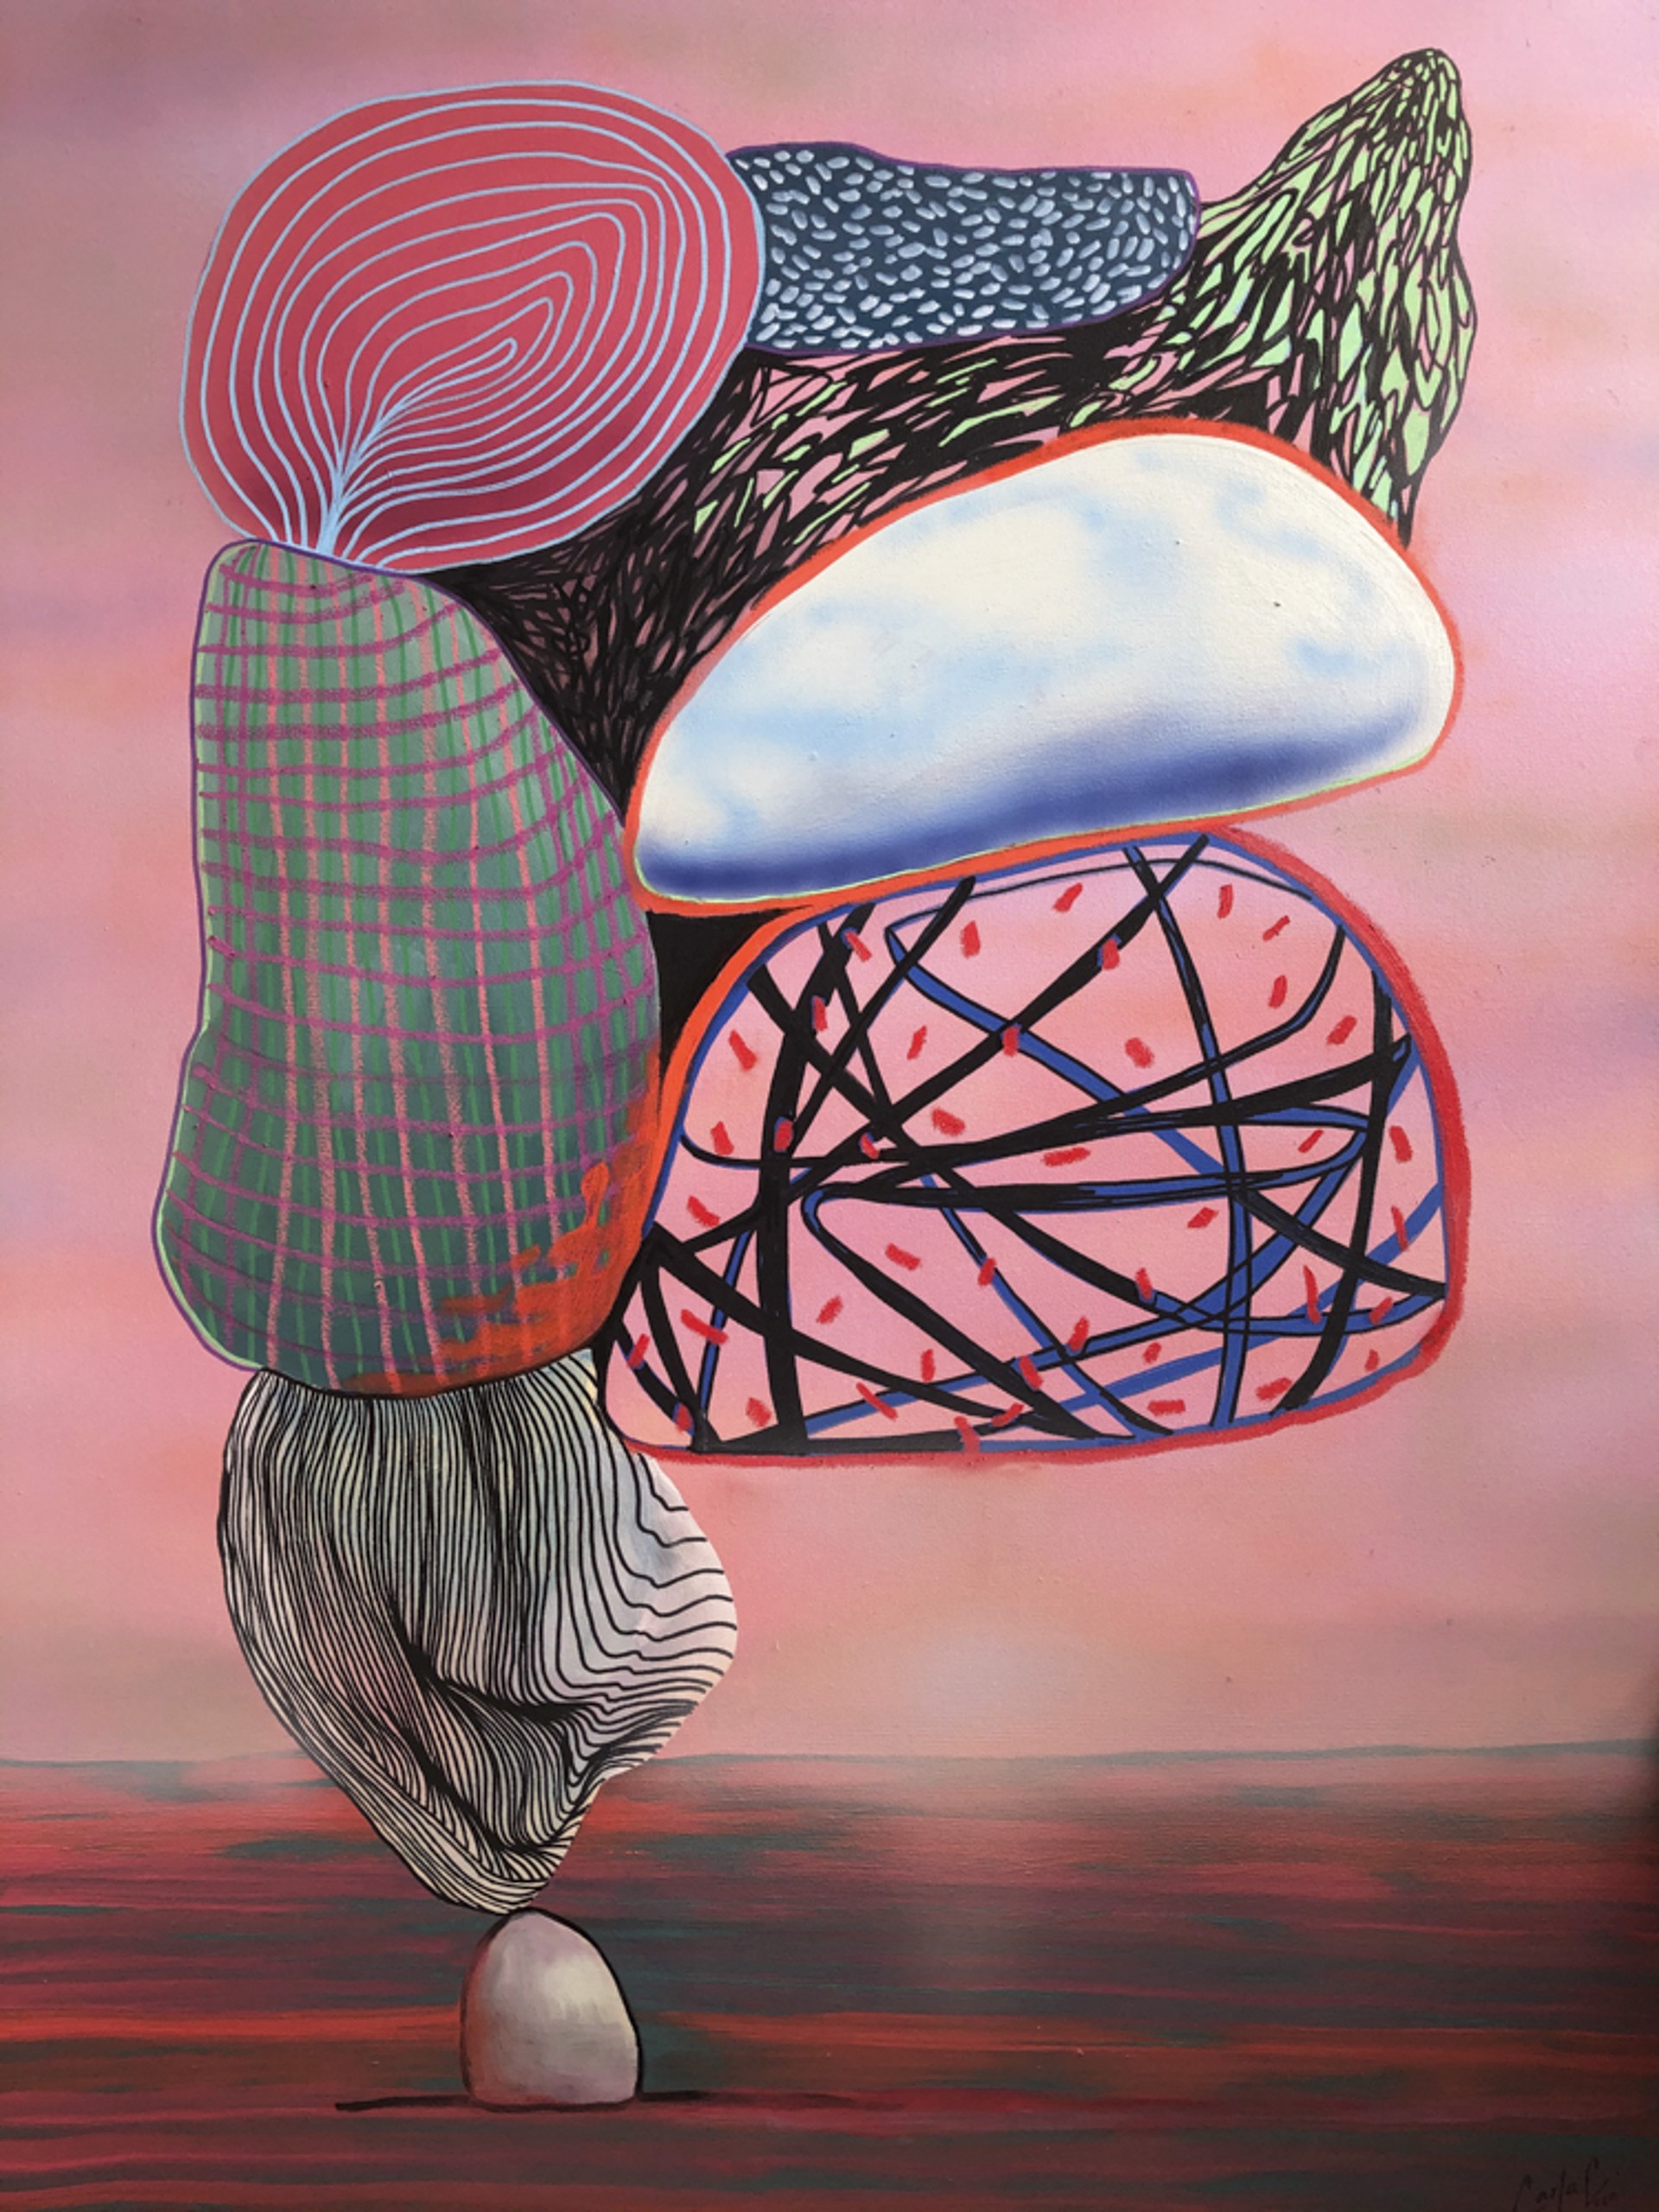 Burdens in Balance by Carla Contreras